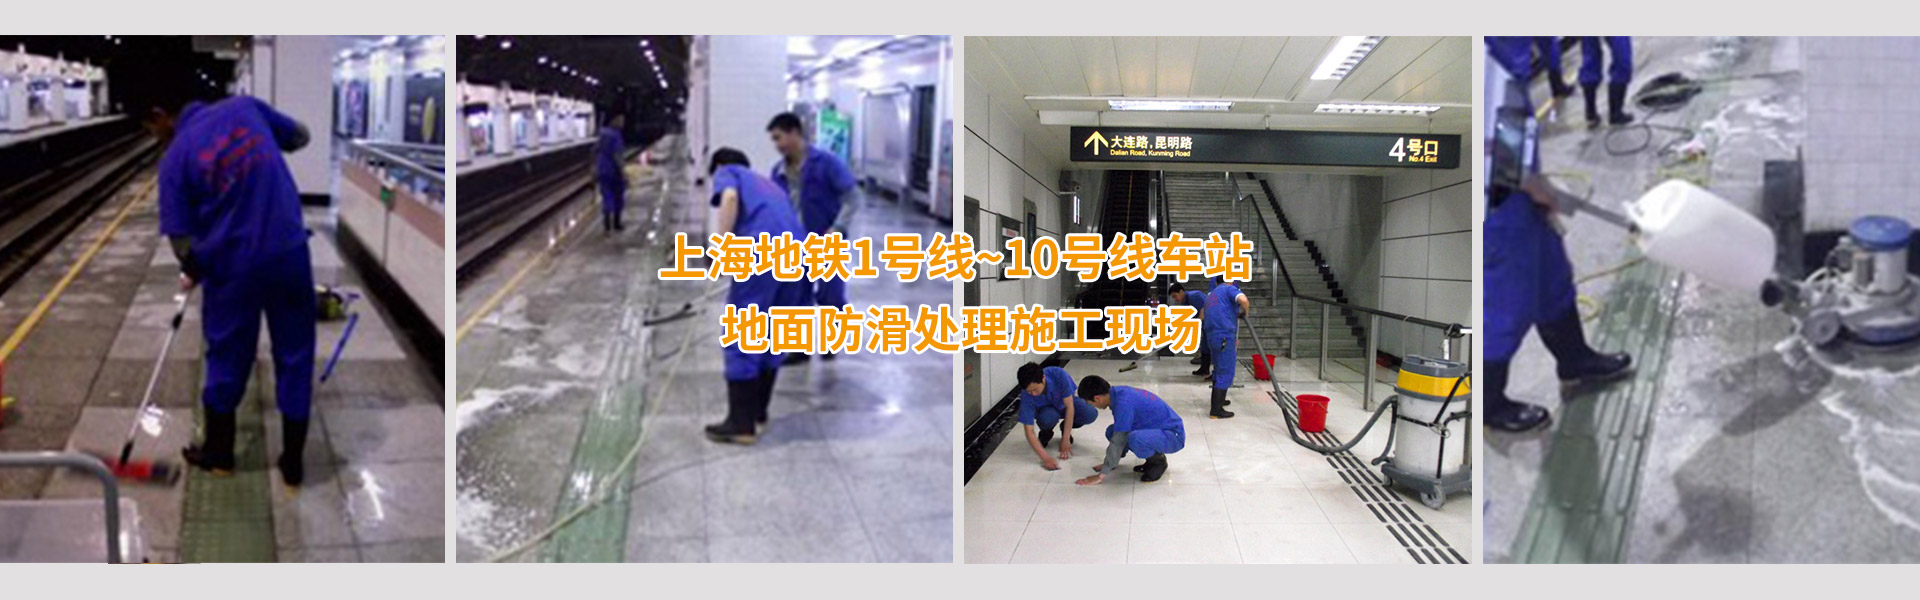 上海安众达地面防滑工程技术有限公司